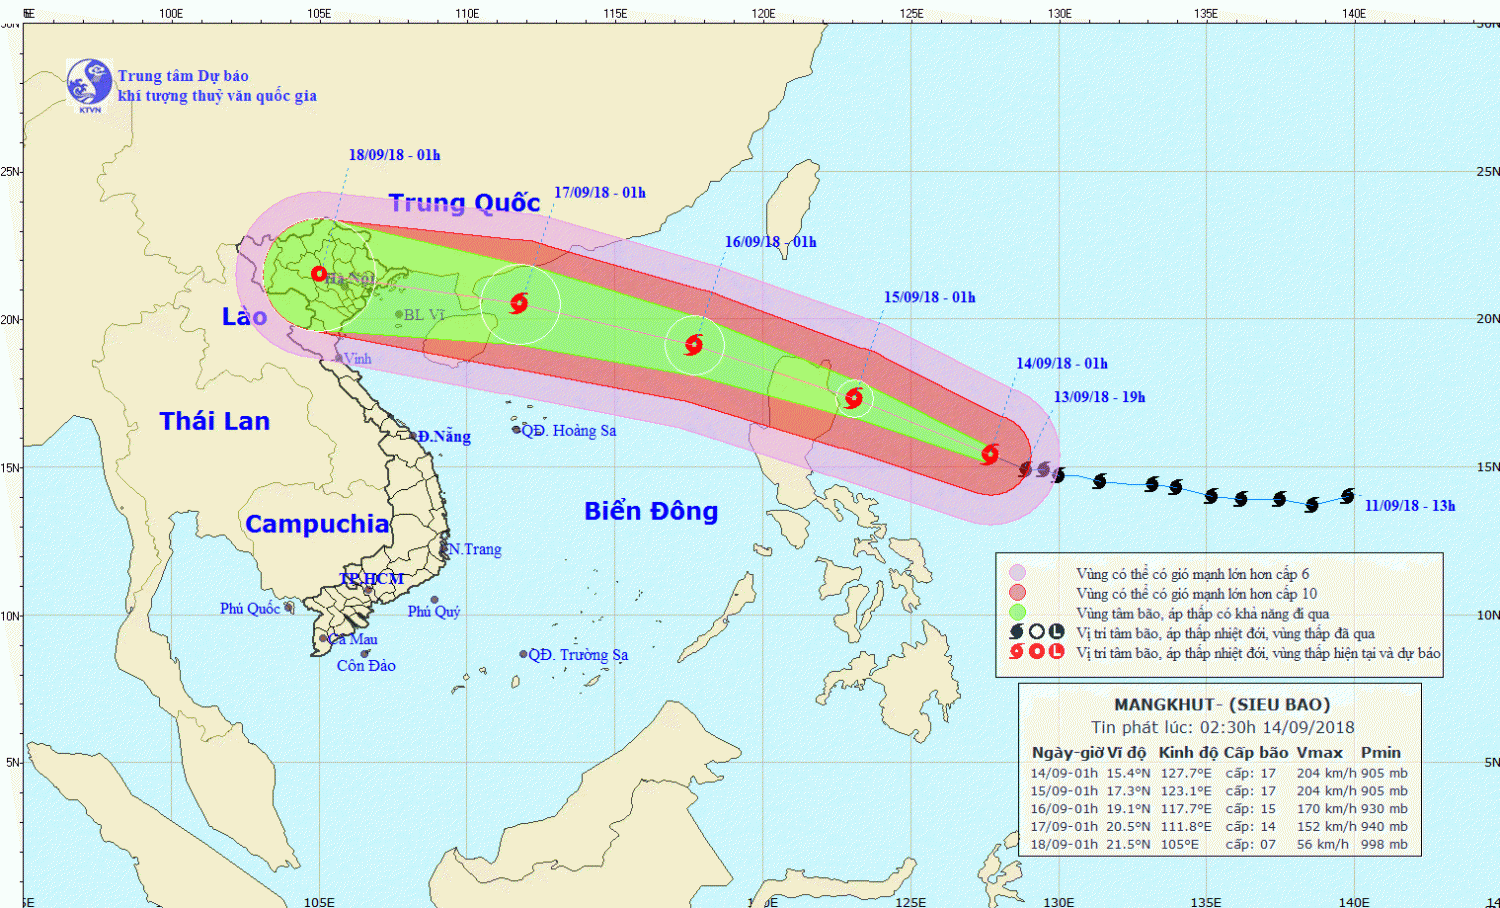 Tin siêu bão gần Biển Đông - siêu bão MANGKHUT (02h30 ngày 14/9)